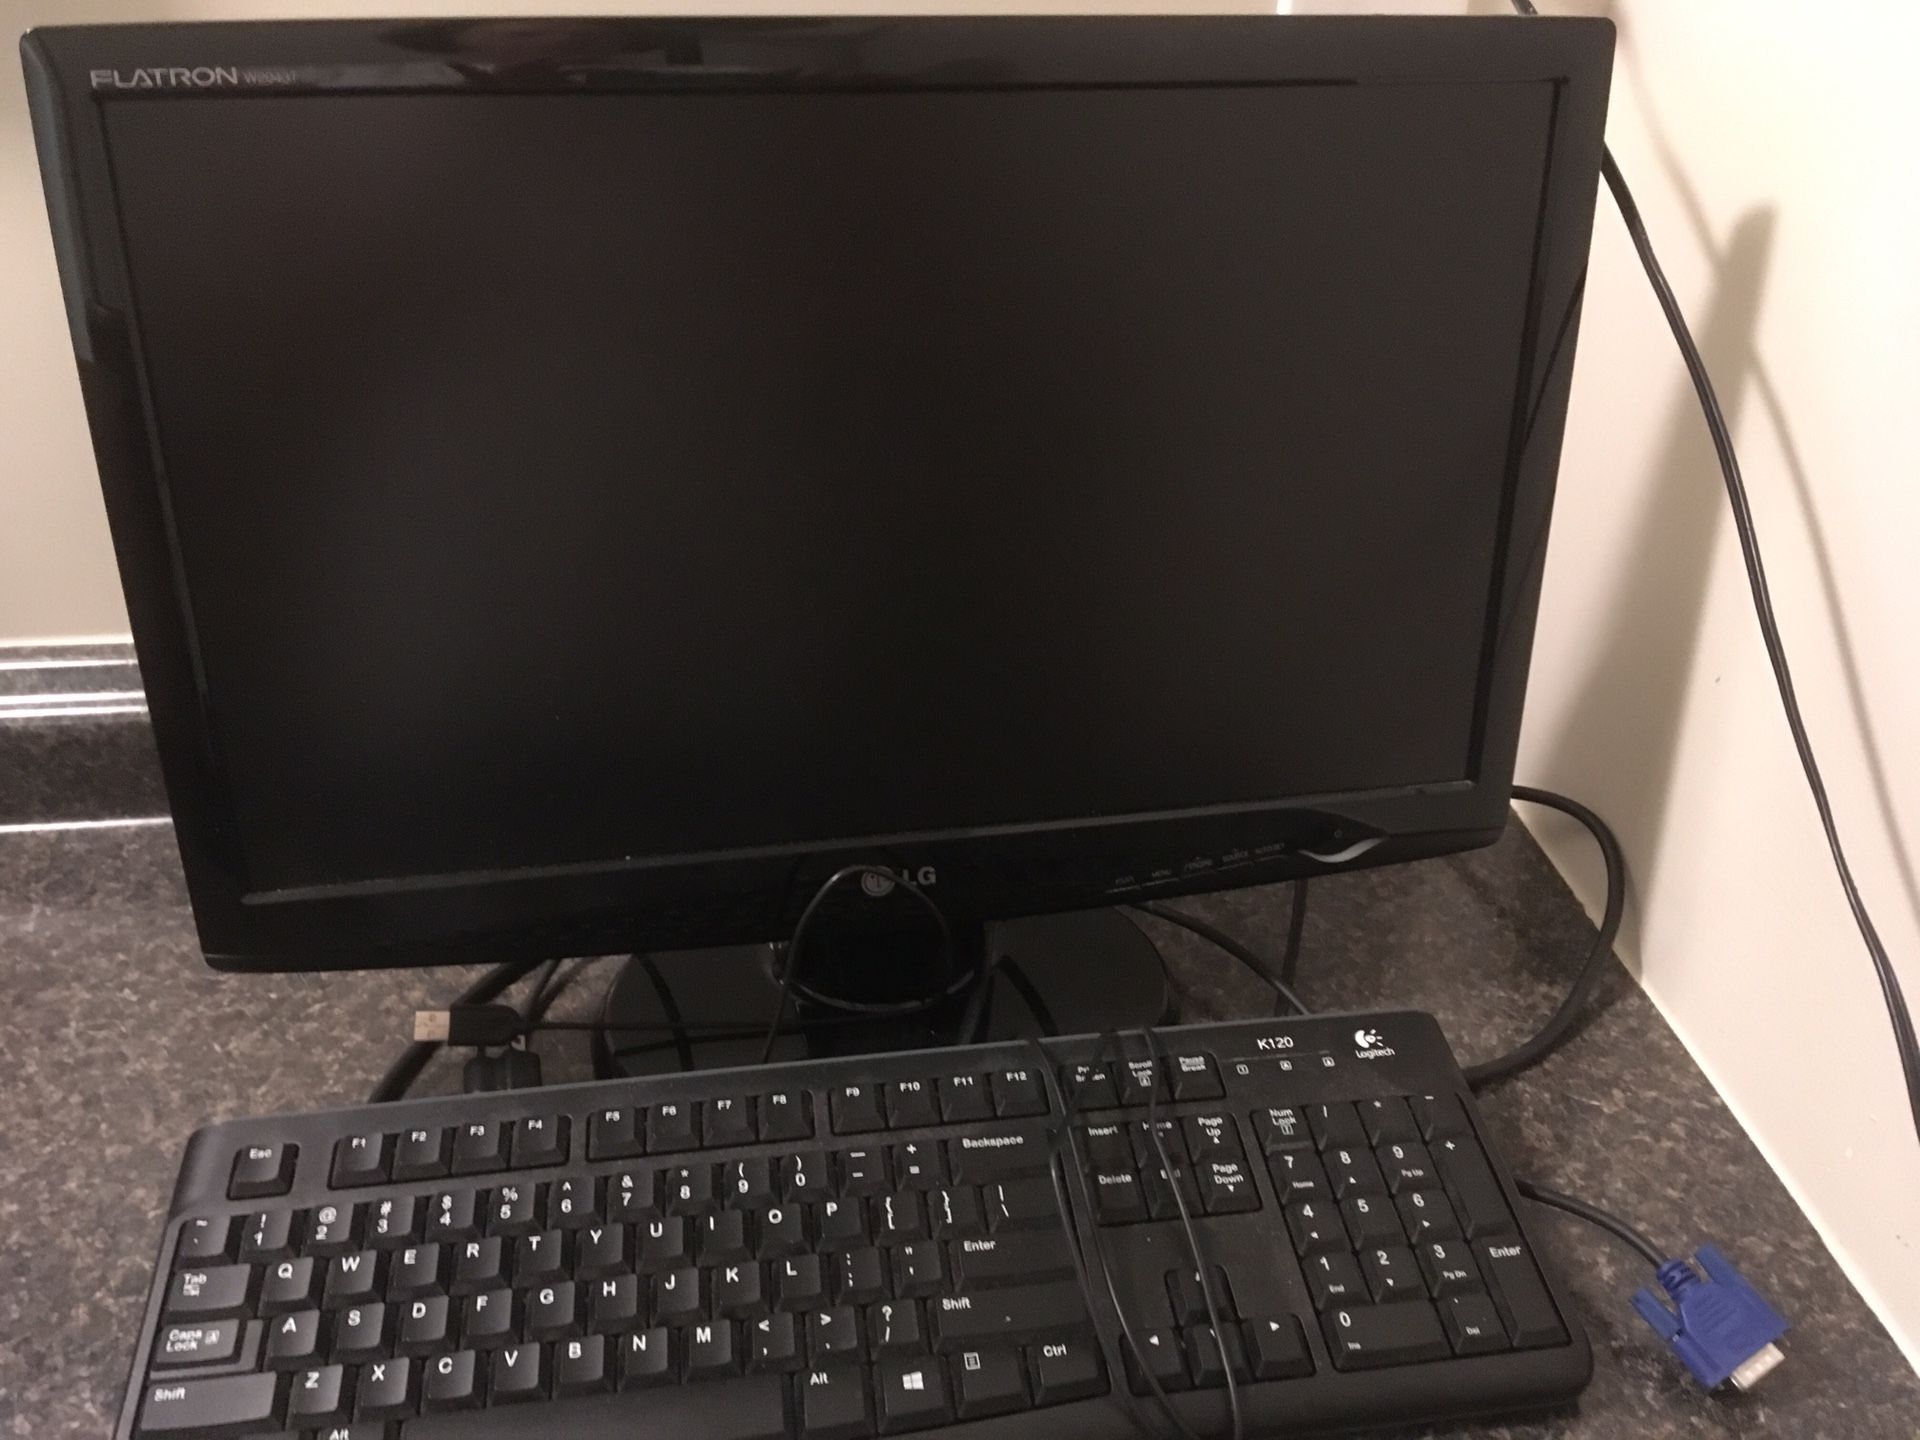 LG monitor and keyboard